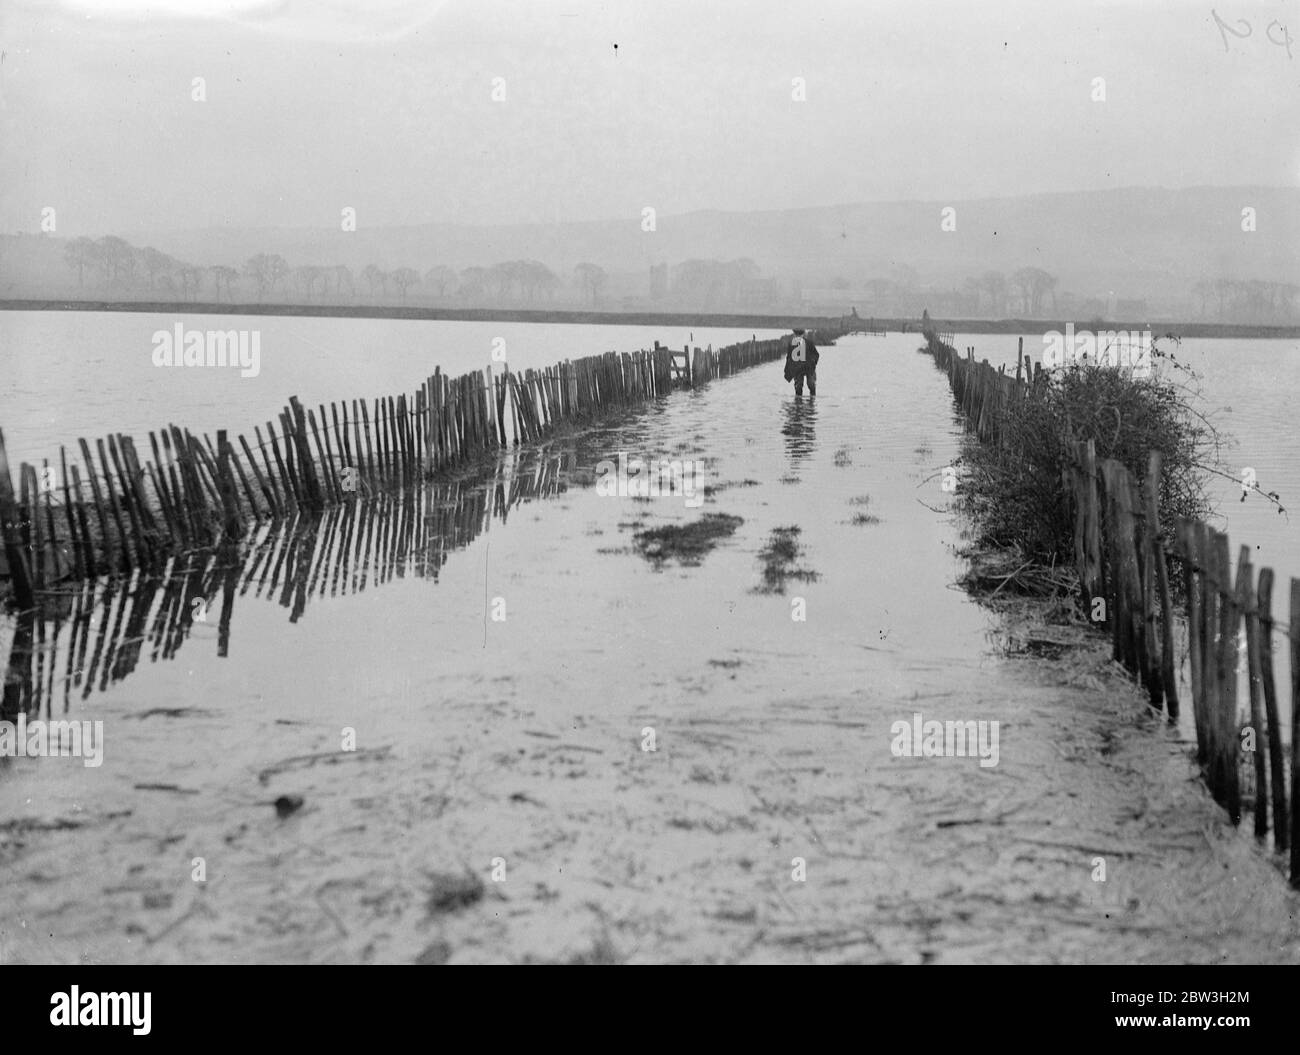 River Medway platzt seine Ufer. Weit verbreitete Überschwemmungen - Bauernhöfe abgeschnitten . Waten durch eine überflutete Straße im Medway Valley. Februar 1935 Stockfoto